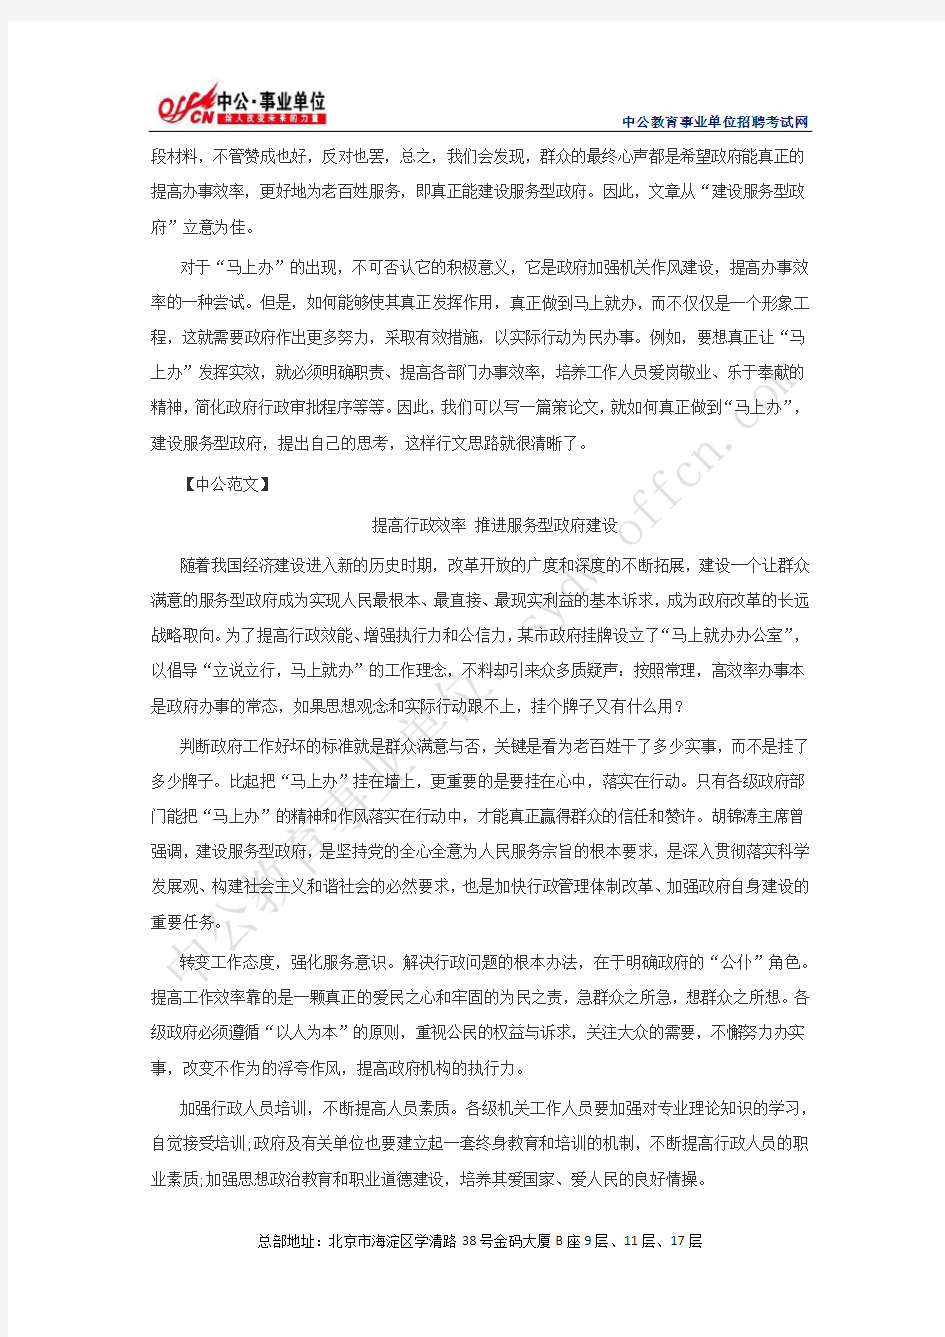 2013年湖北省直事业单位考试“材料作文”真题解析